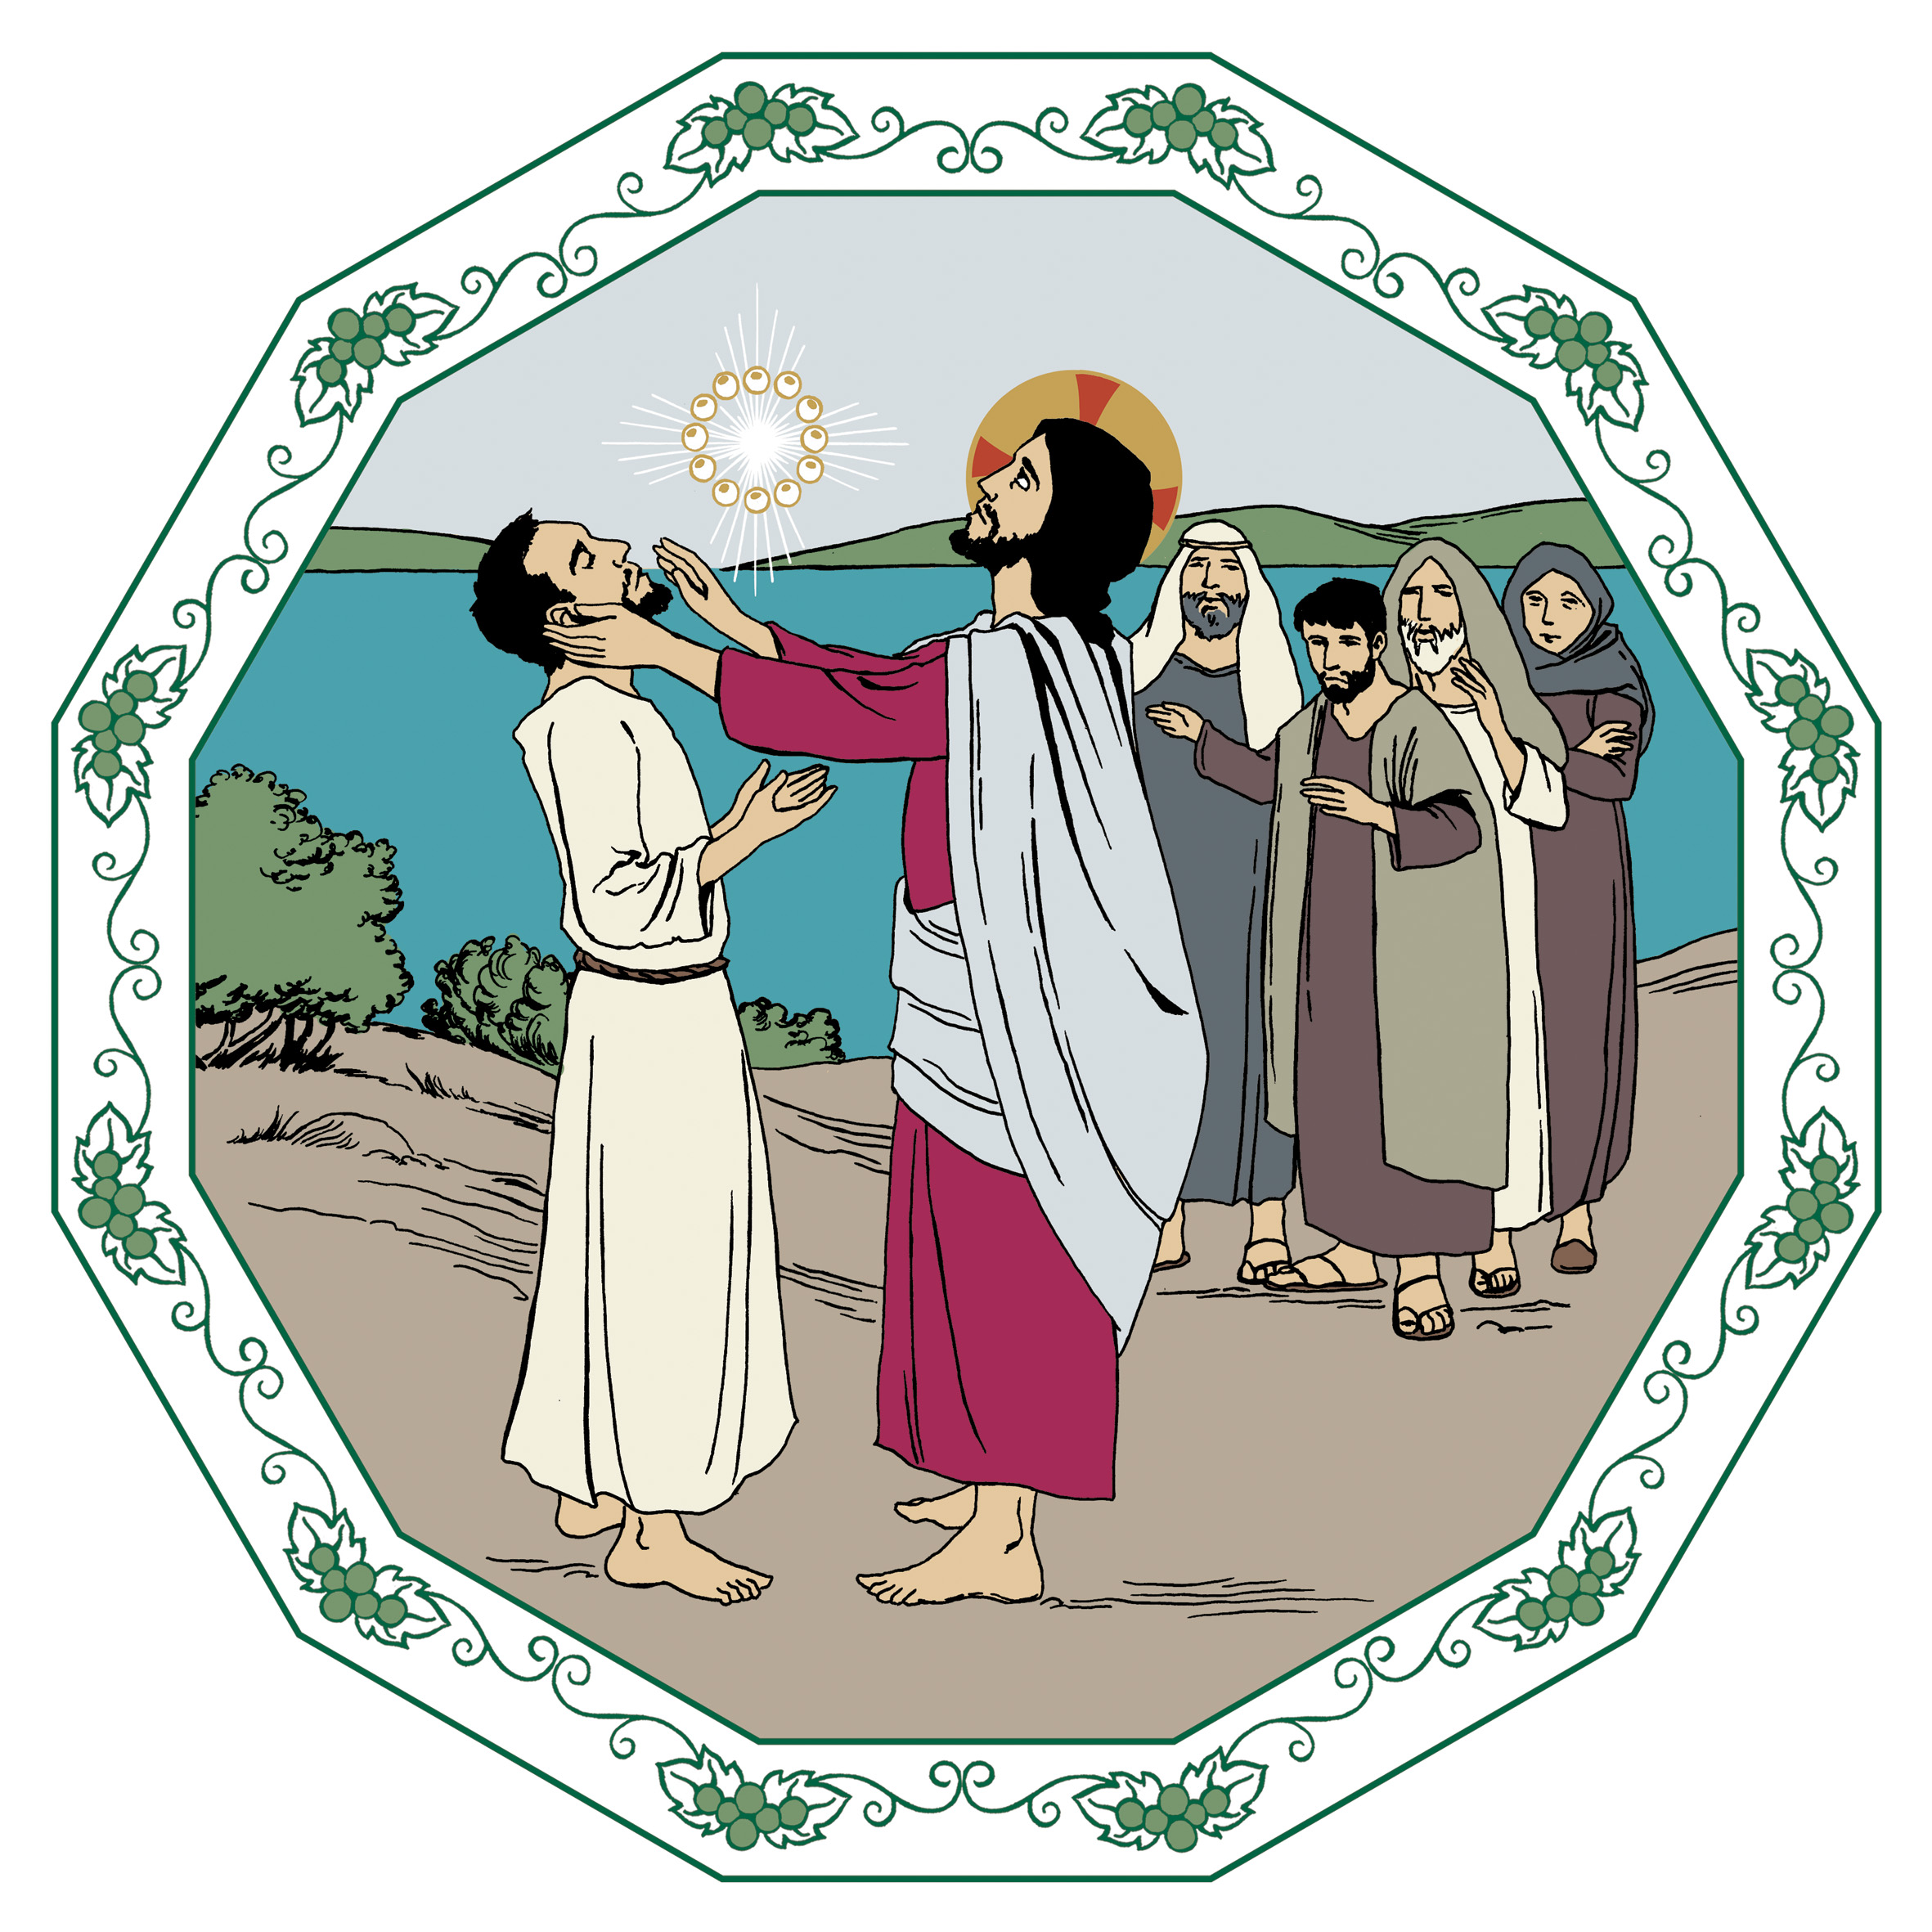 Keskellä seisoo Jeesus ja koskettaa edessään seisovaa ihmistä kasvoihin. Taustalla näkyy järvi ja ihmisiä seuraamassa parantamista.